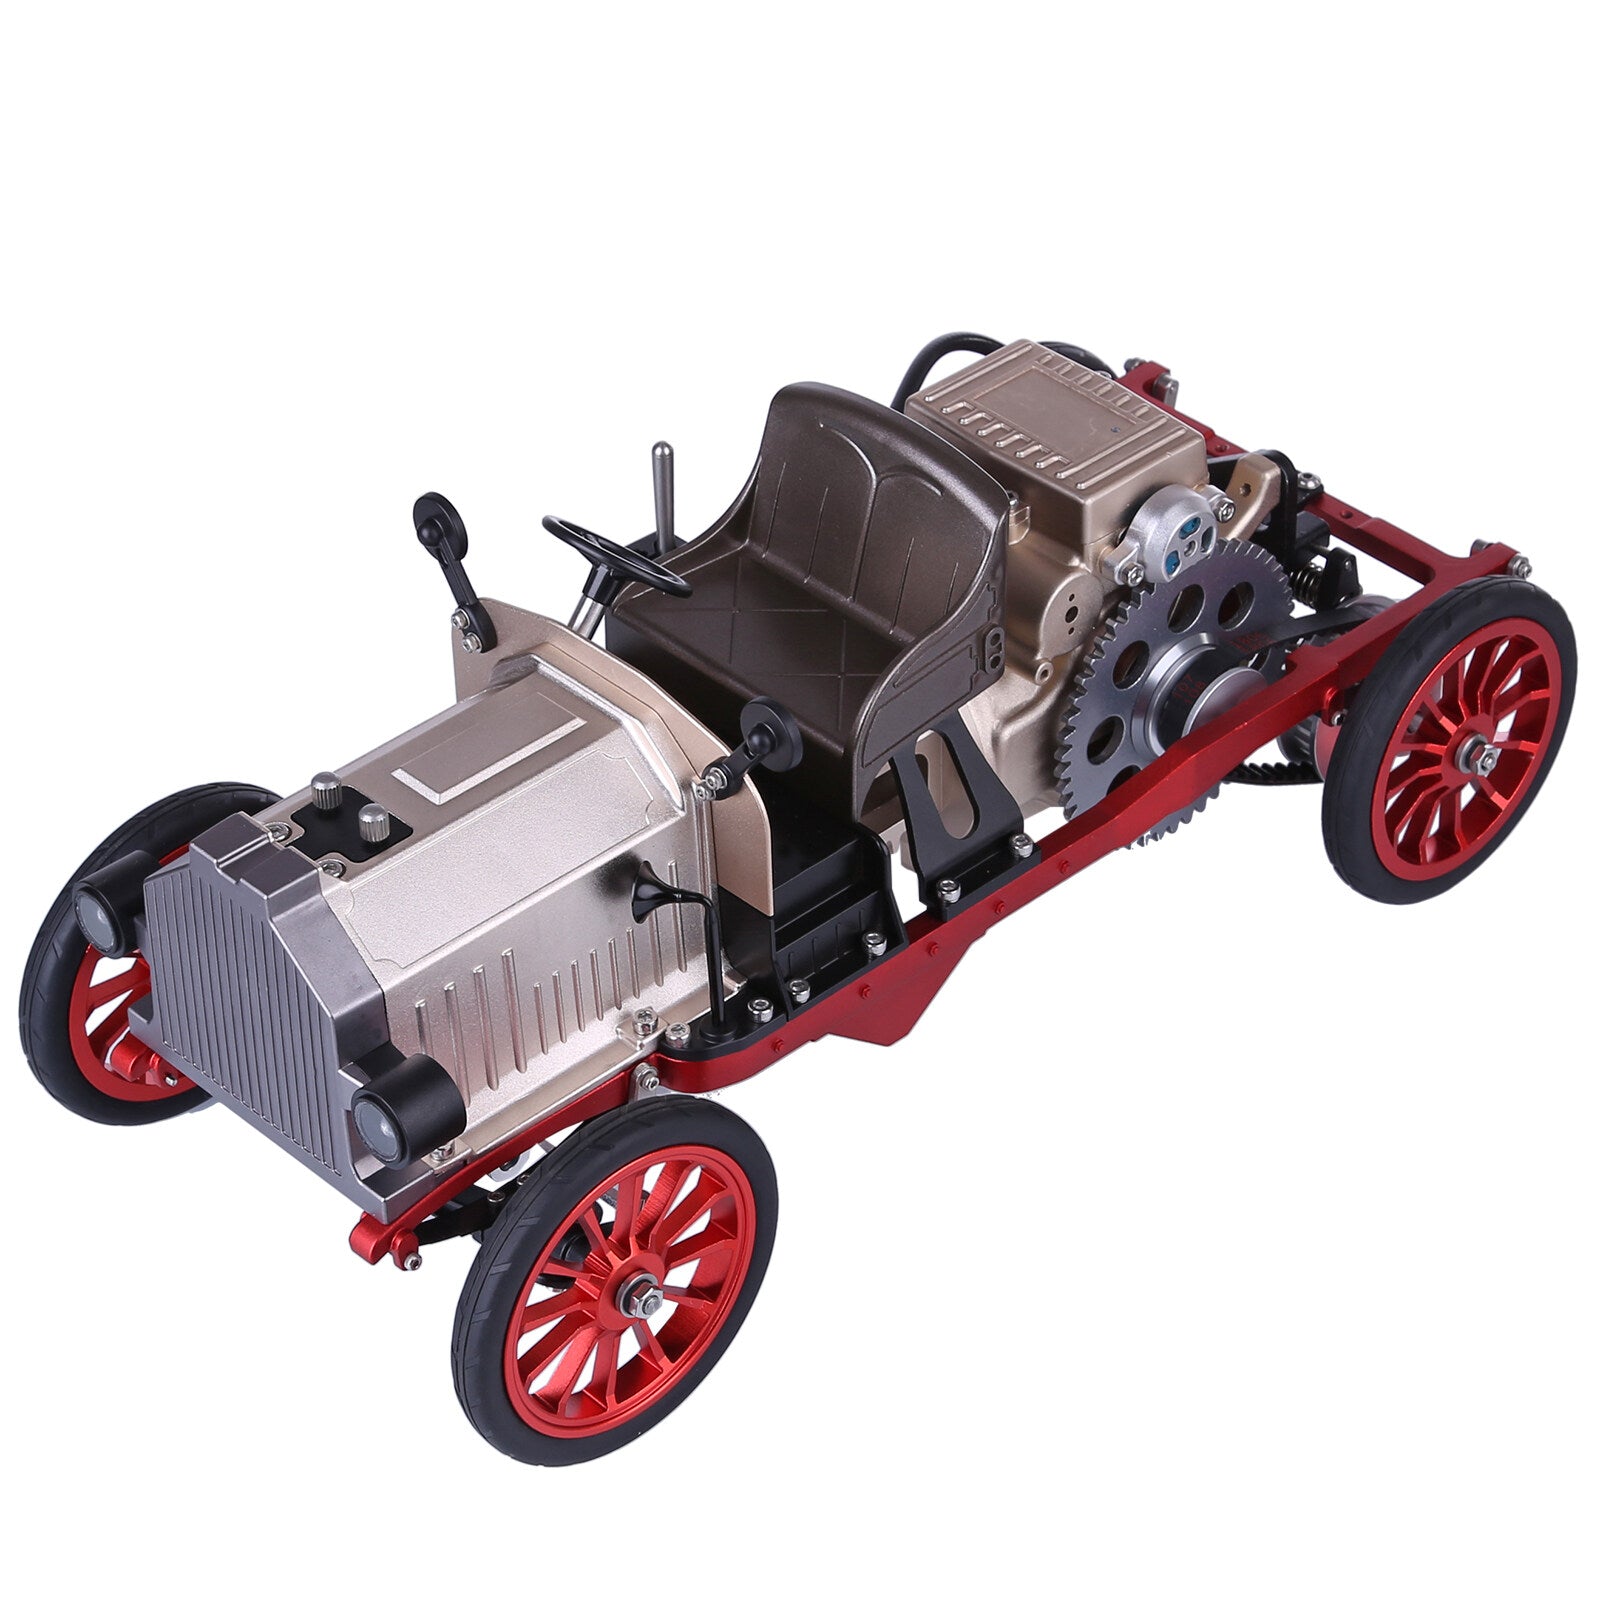 TECHING Klassisches Auto mit Einzylinder-Motormodellbausatz, das funktioniert - 300 Teile 8